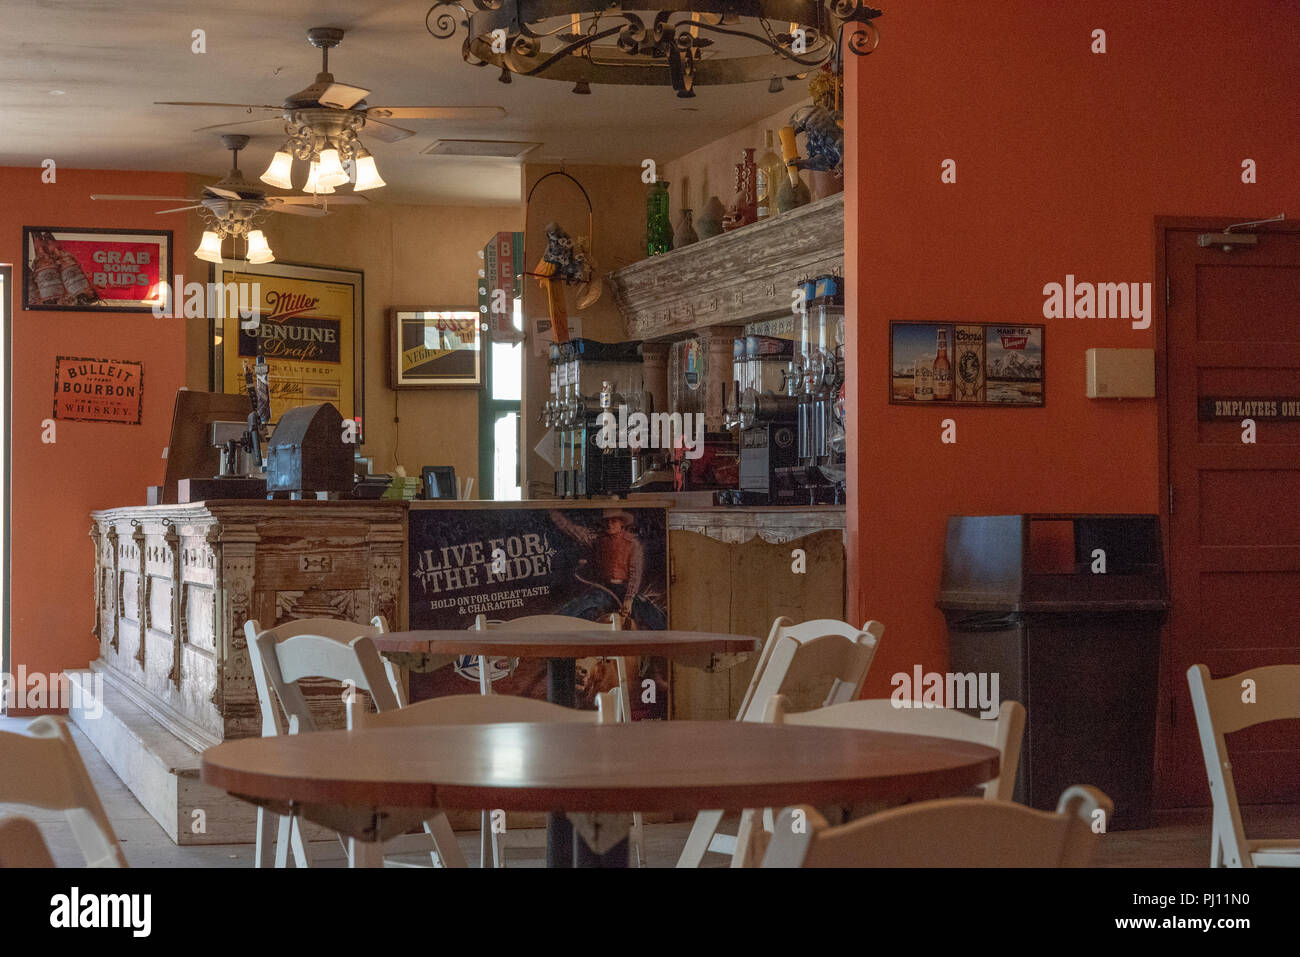 Innenraum der Restaurant Bar, runde Tische und Klappstühle. Wand zeigt Bilder und Poster der westlichen Filme. Stockfoto